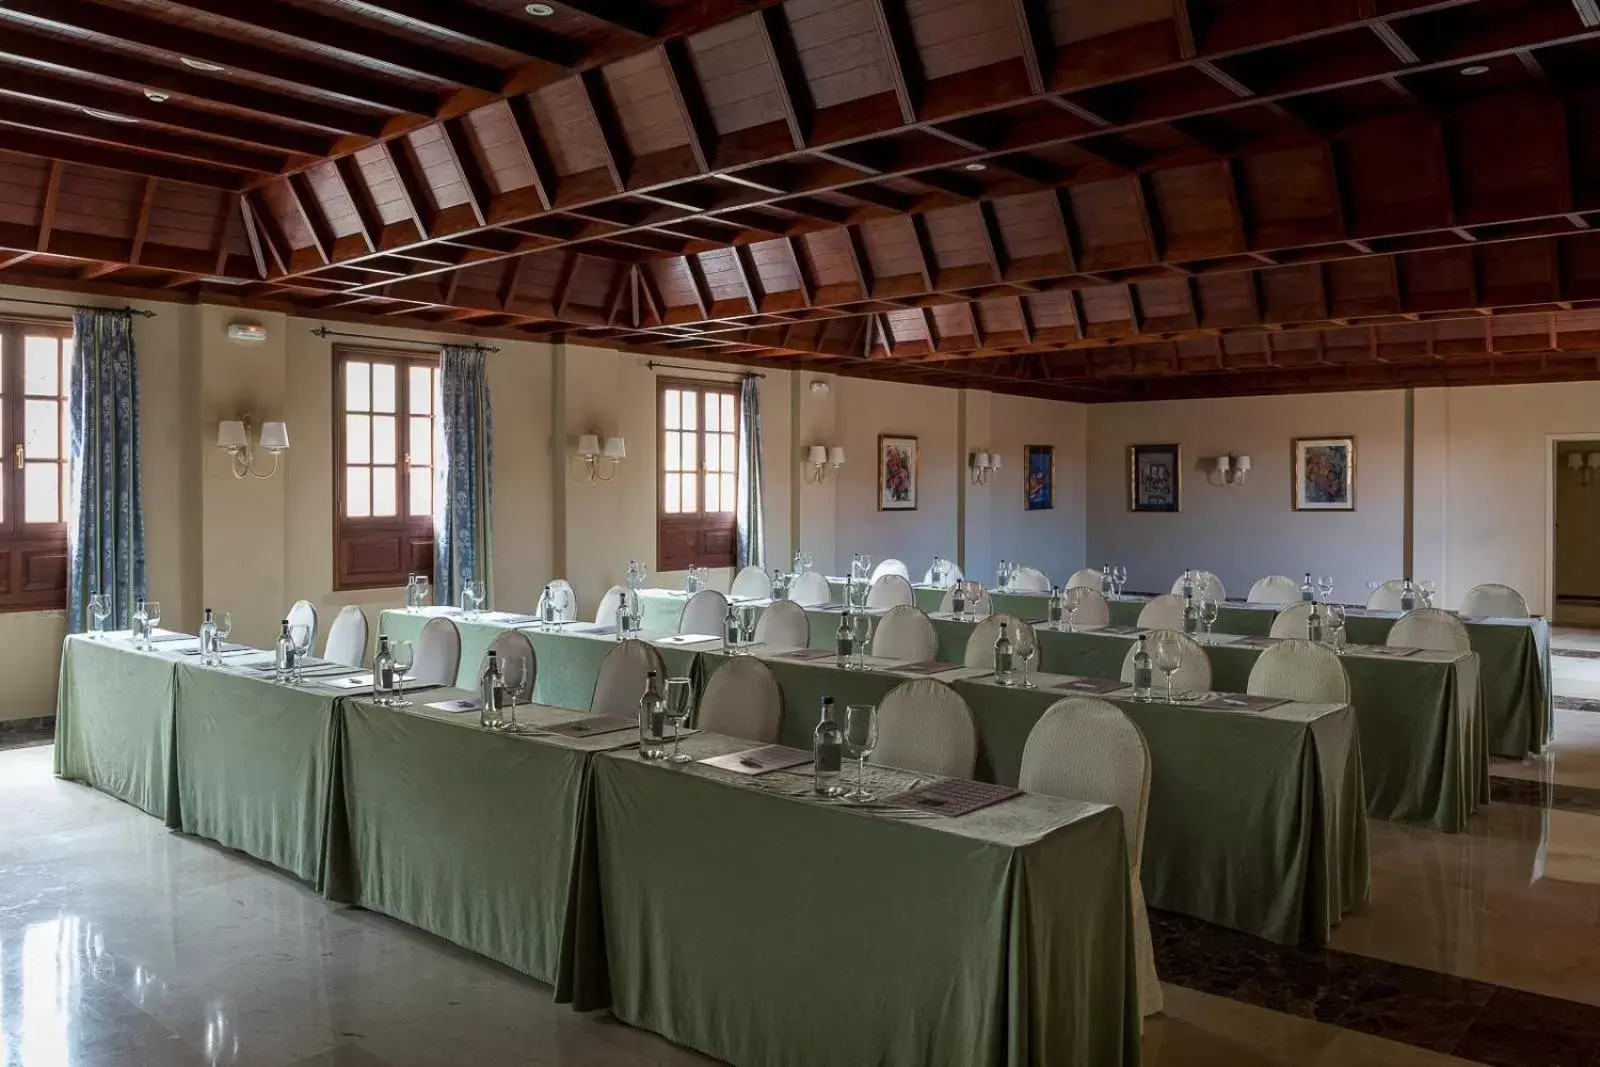 Banquet/Function facilities, Banquet Facilities in Parador de La Palma